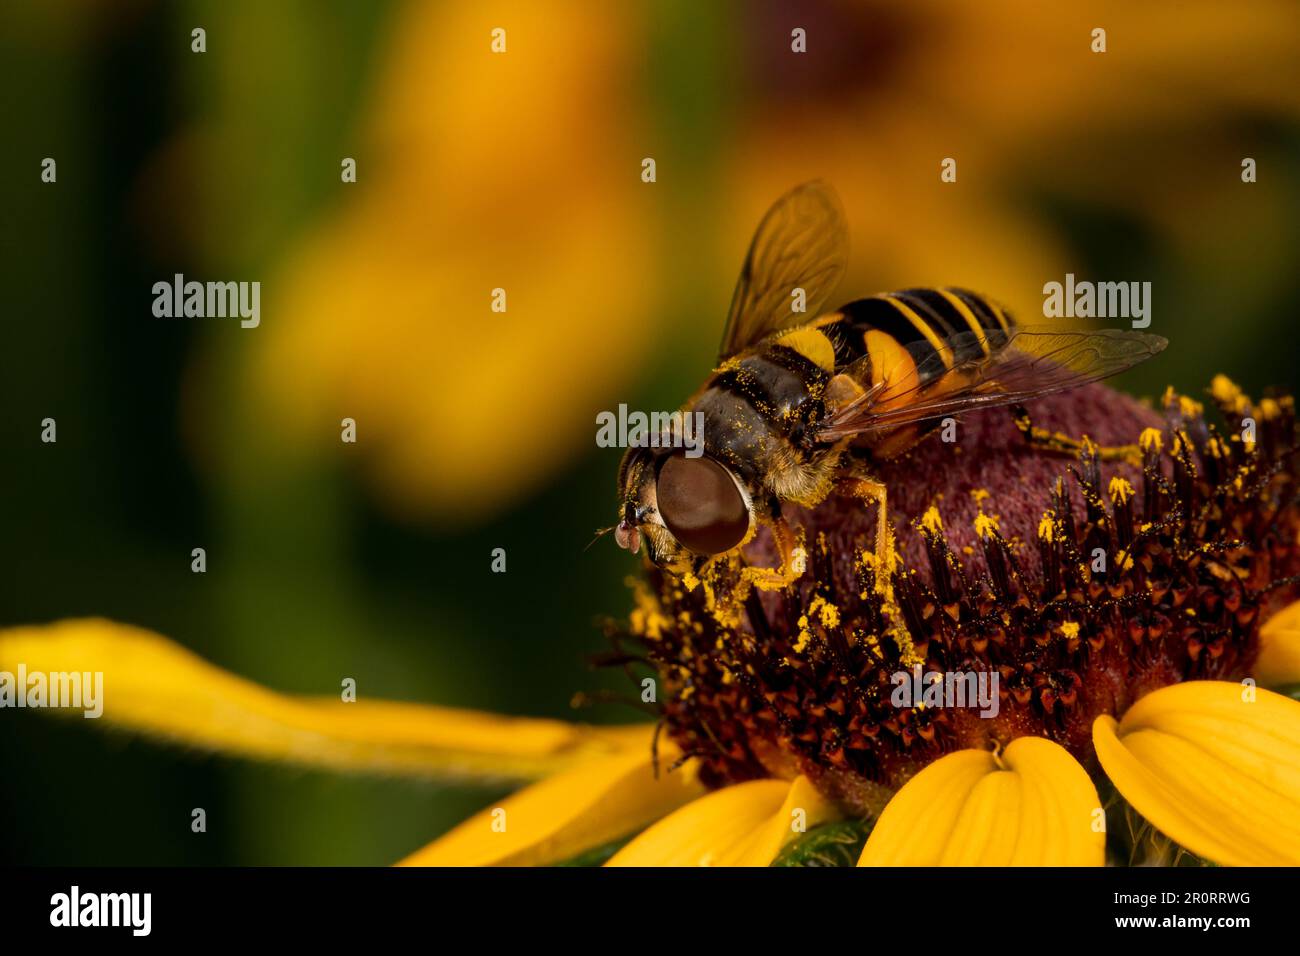 Die Drohne fliegt auf gelber Blume. Insekten- und Wildtierschutz, Lebensraumschutz und Blumengarten-Konzept im Garten. Stockfoto